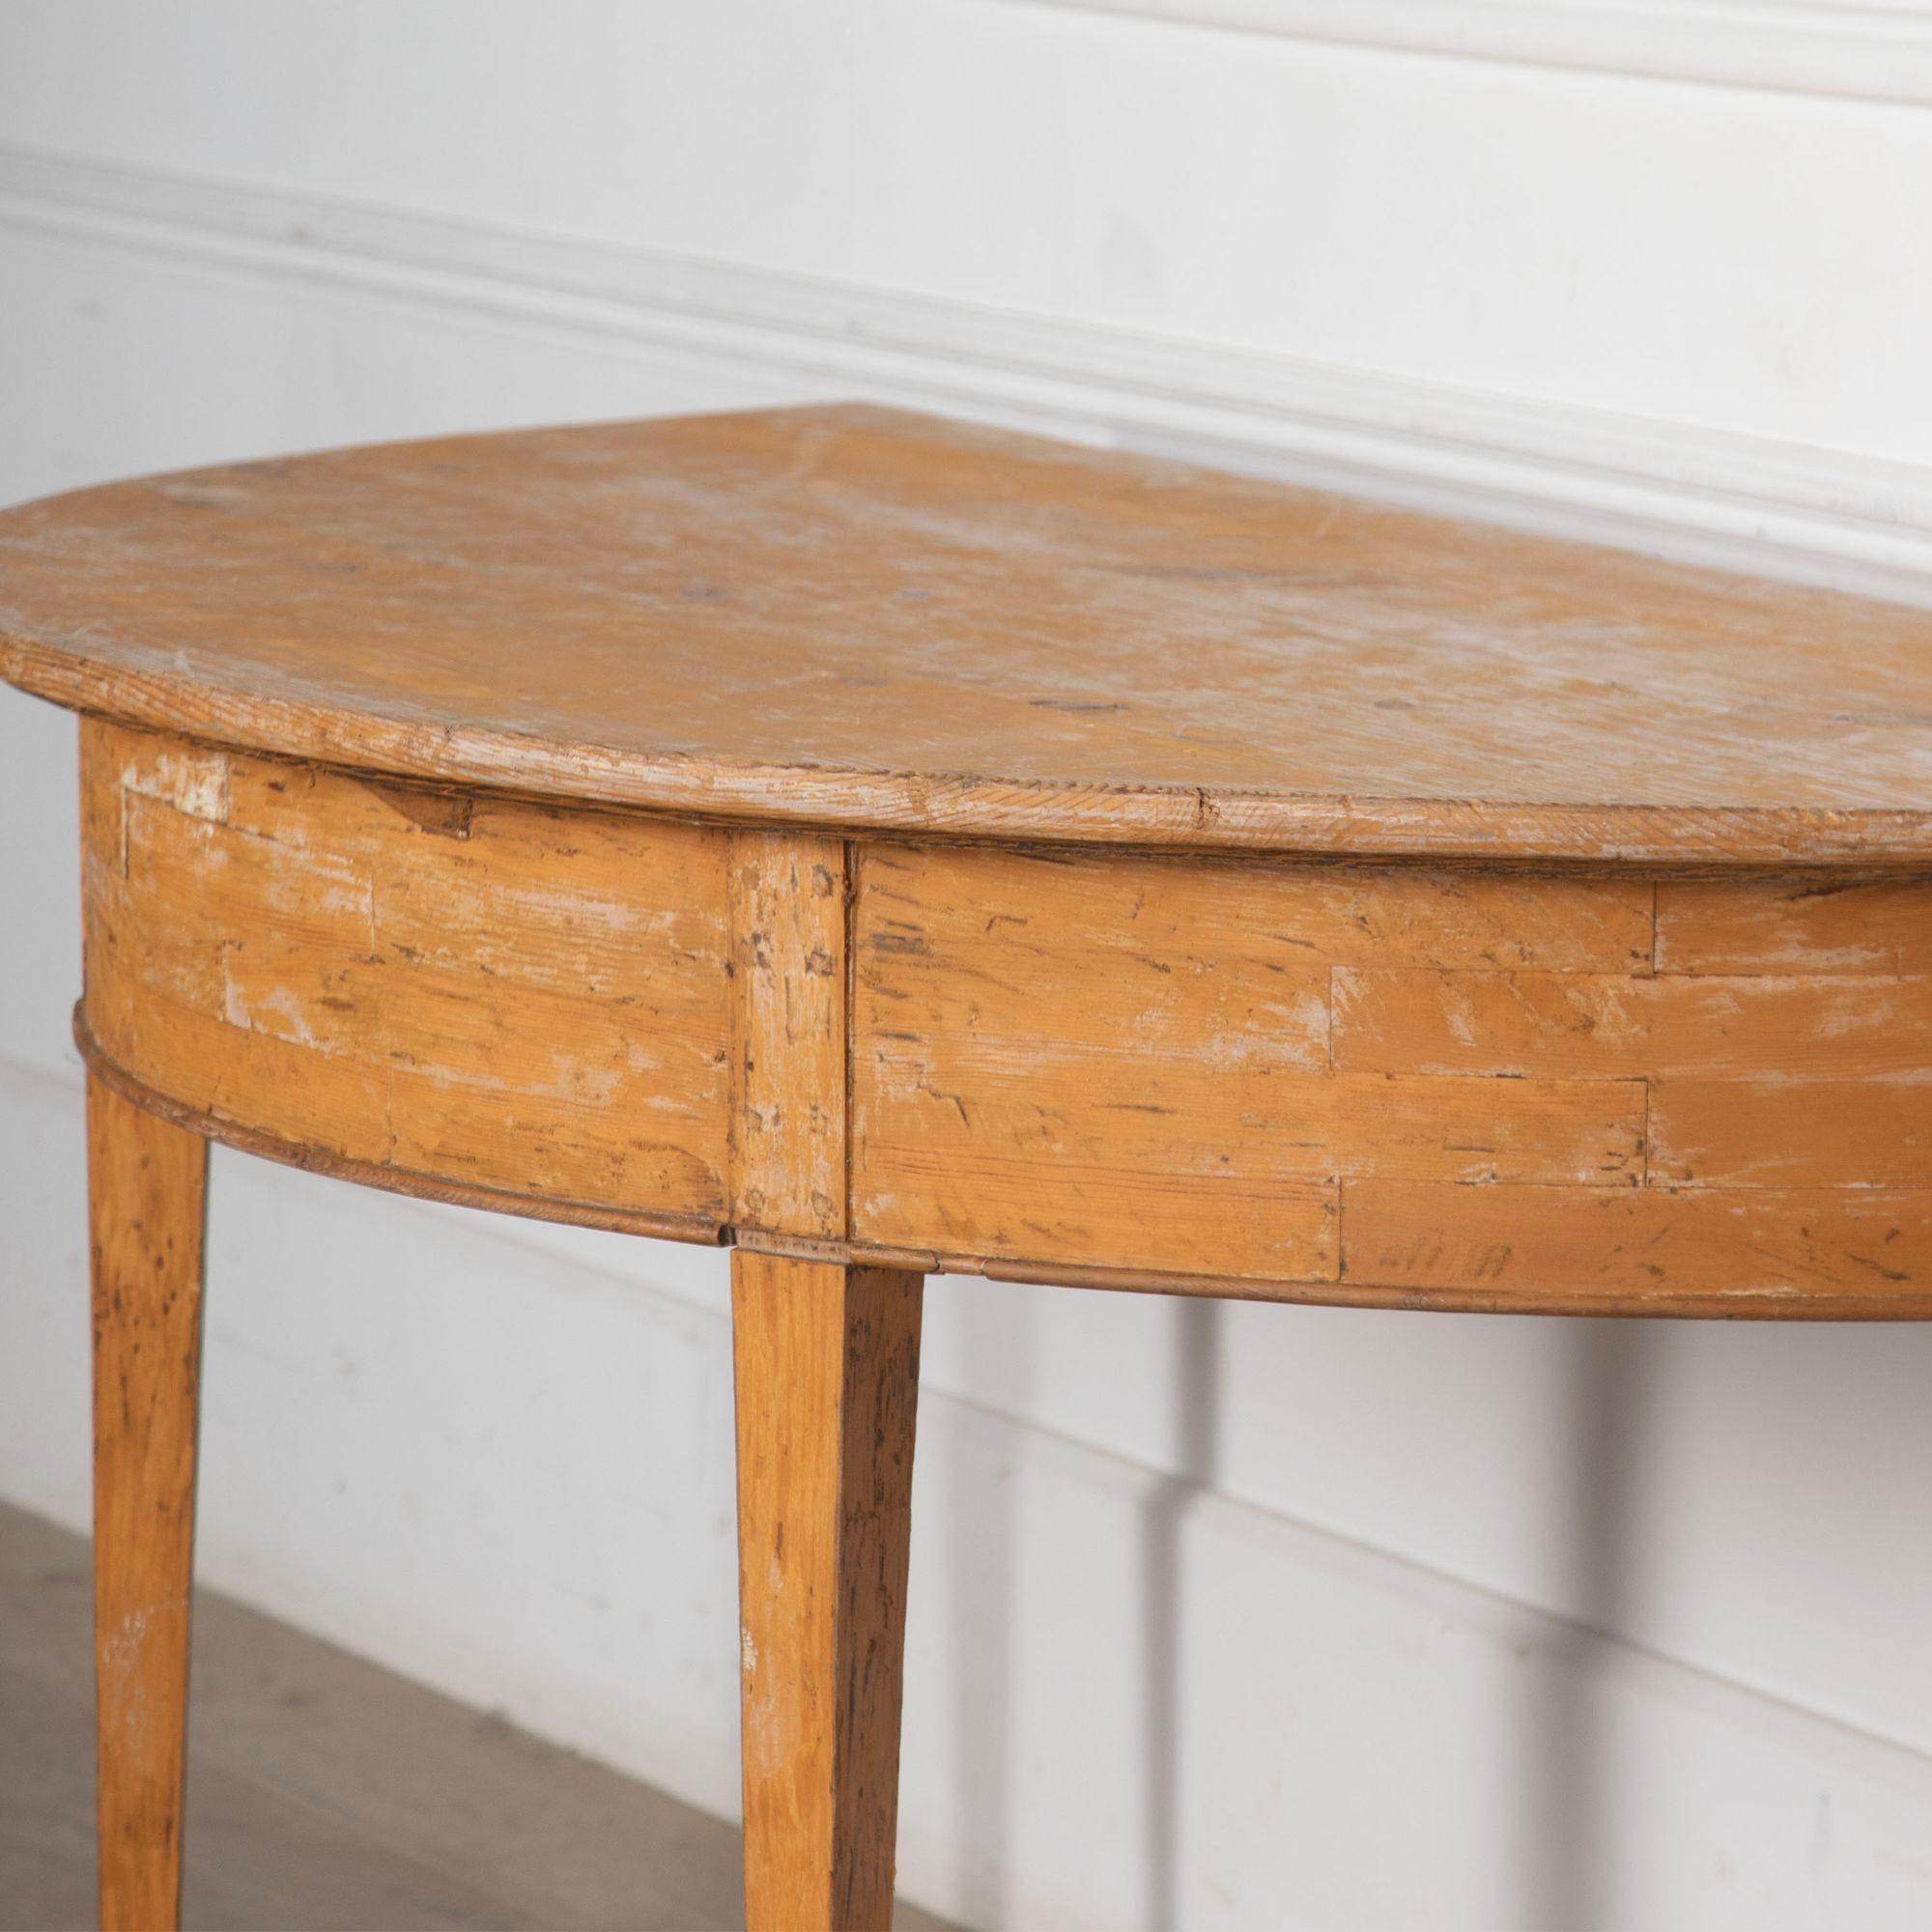 Paire de tables en demi-lune d'époque gustavienne d'une taille inhabituelle, avec des traces de décoration d'origine.